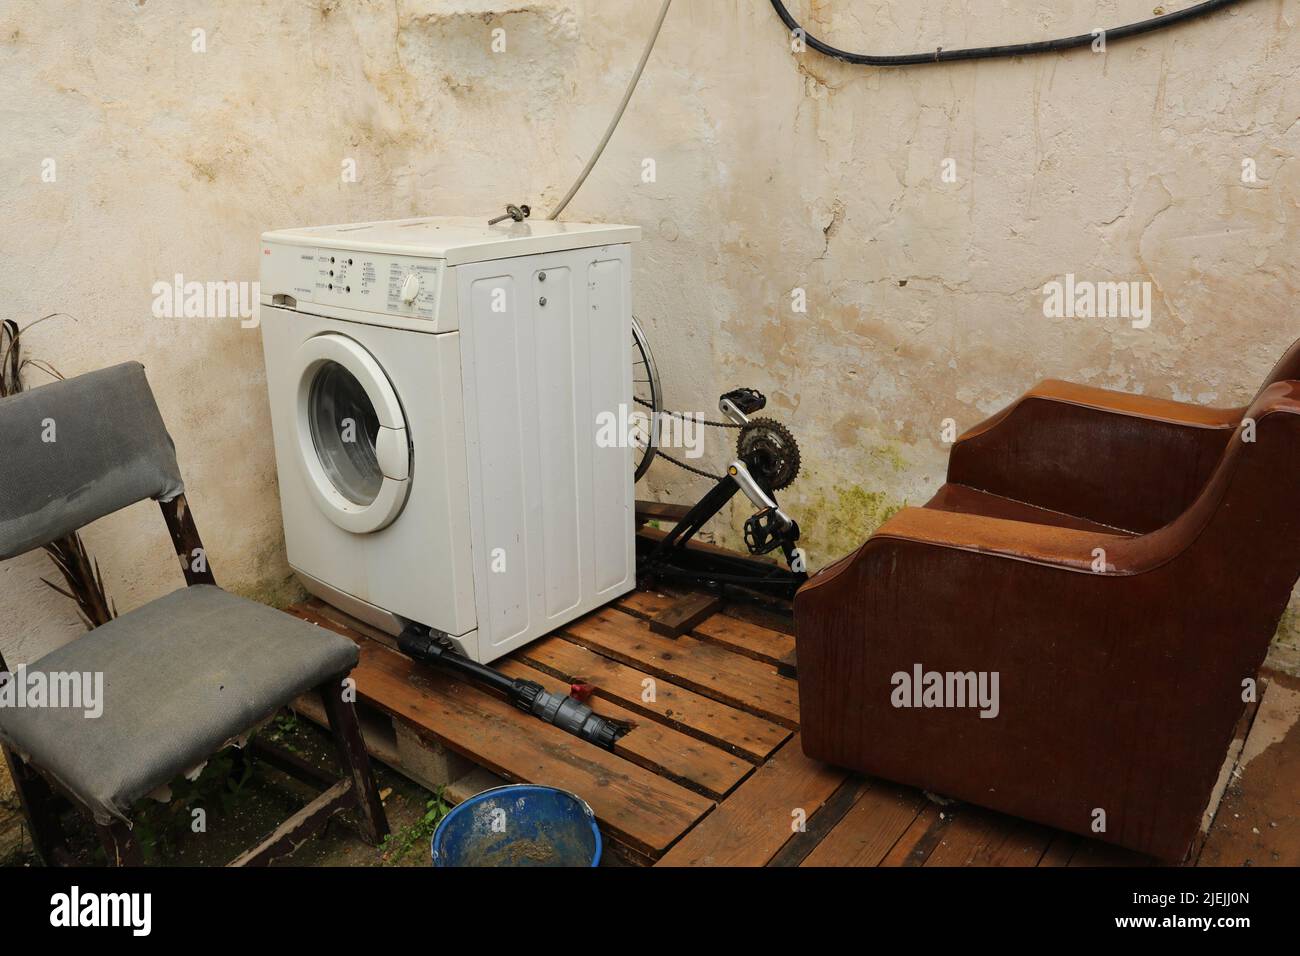 Vecchia lavatrice immagini e fotografie stock ad alta risoluzione - Alamy